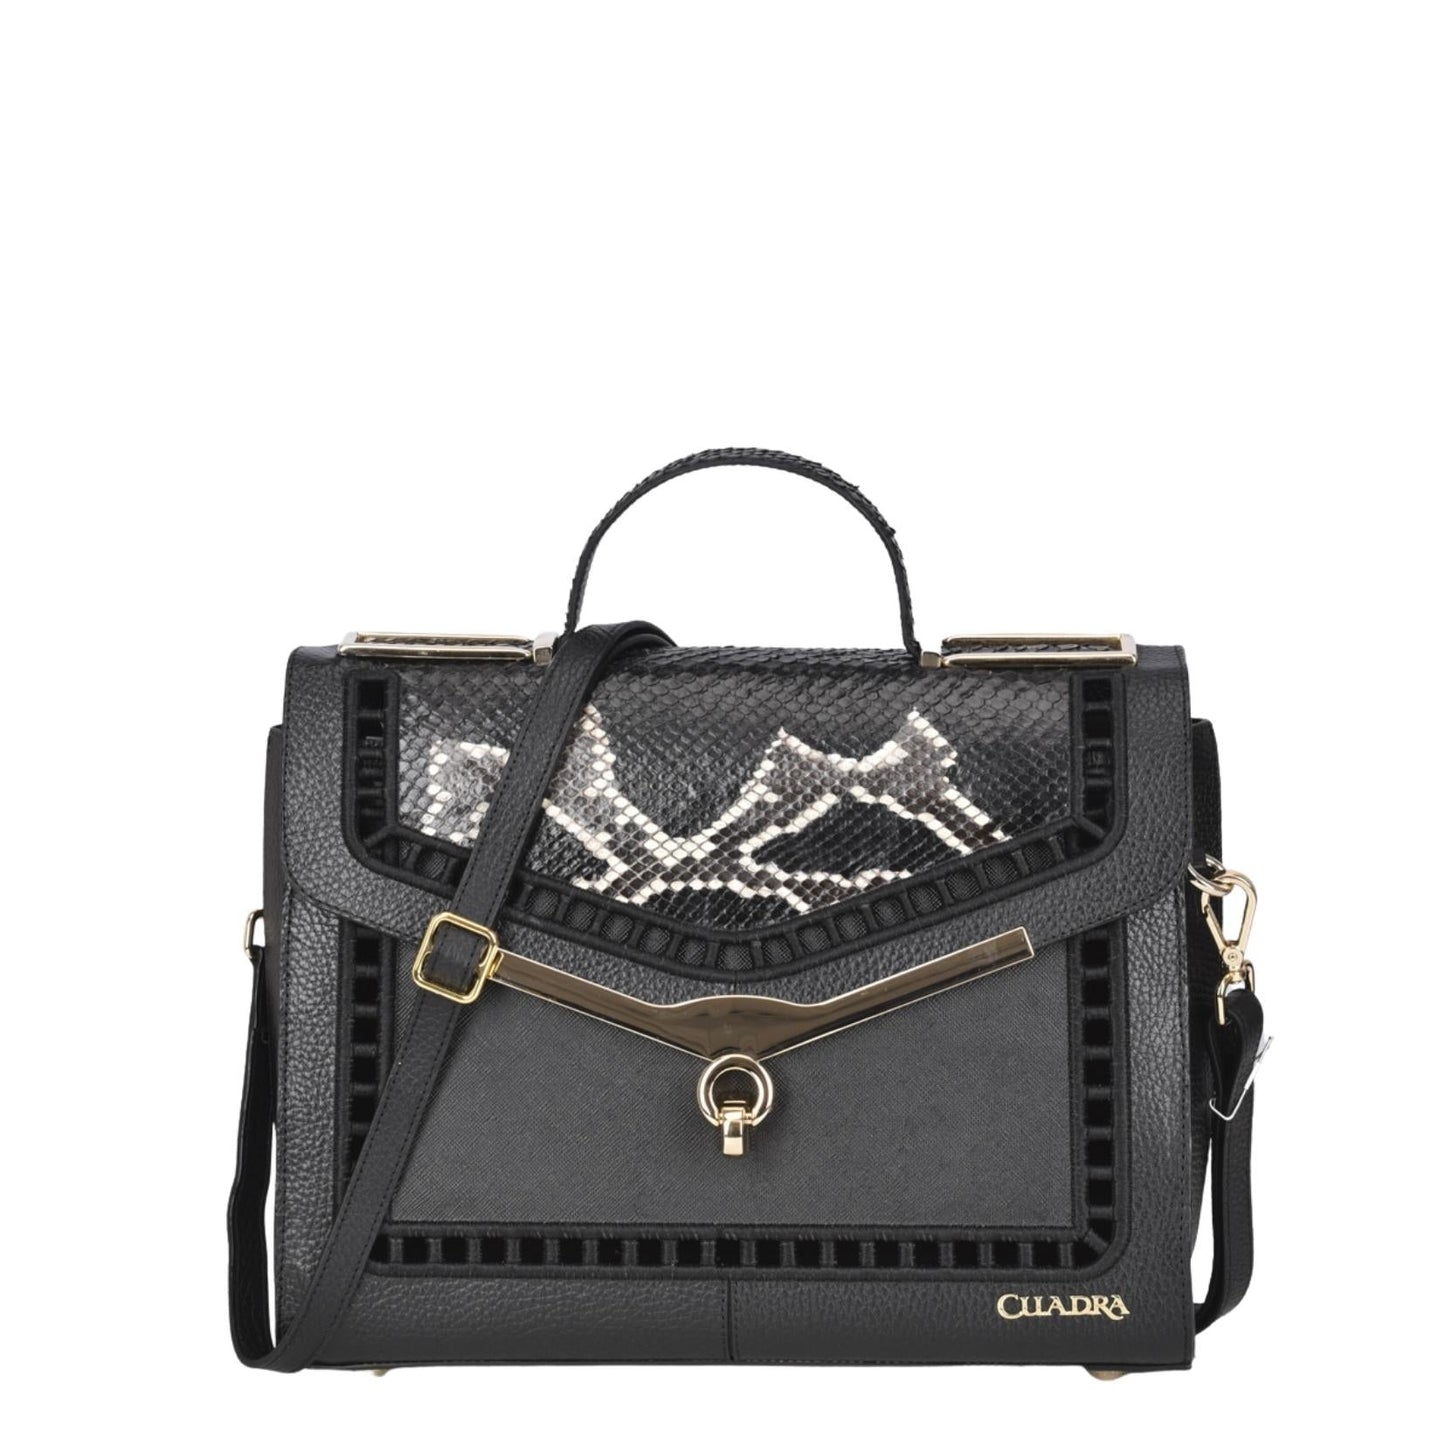 BOD26PI - Cuadra black casual fashion python handbag for women-Kuet.us